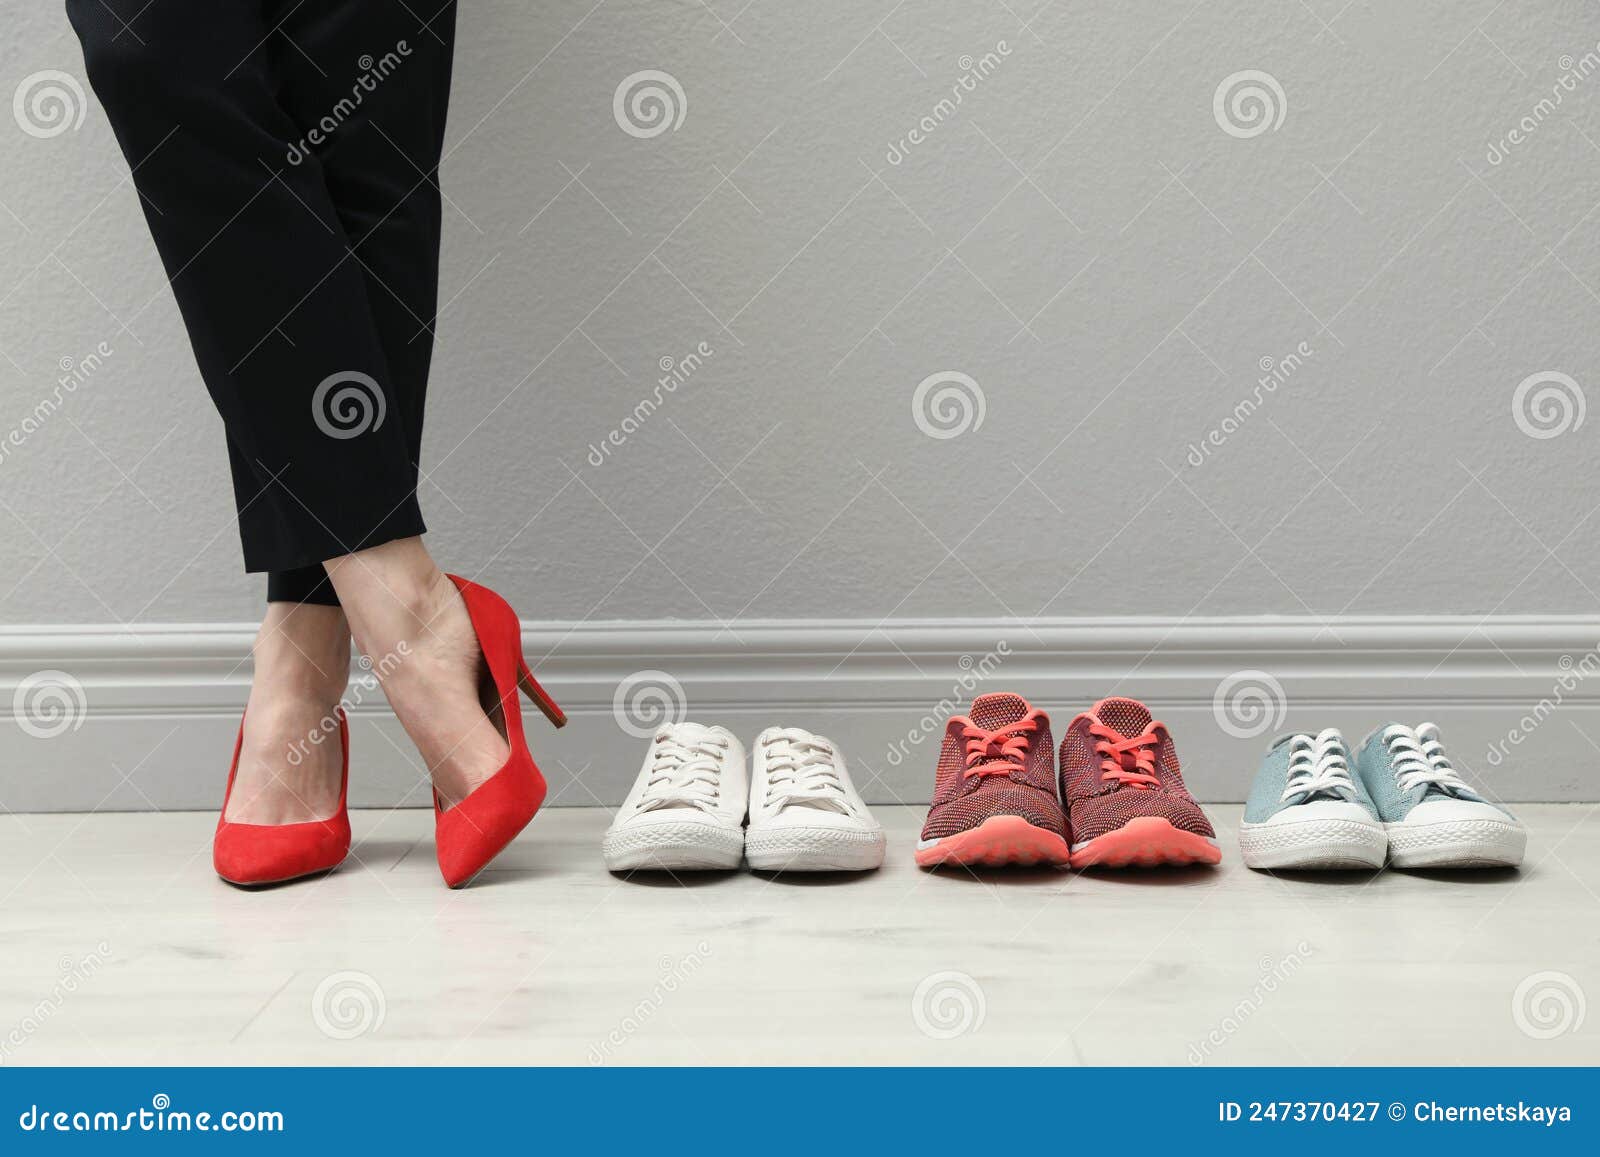 Mujer De Negocios Con Zapatos De Tacón Alto Cerca De Diferentes Zapatillas Cómodas En El Armario Imagen de archivo - Imagen de empresario, comodidad: 247370427